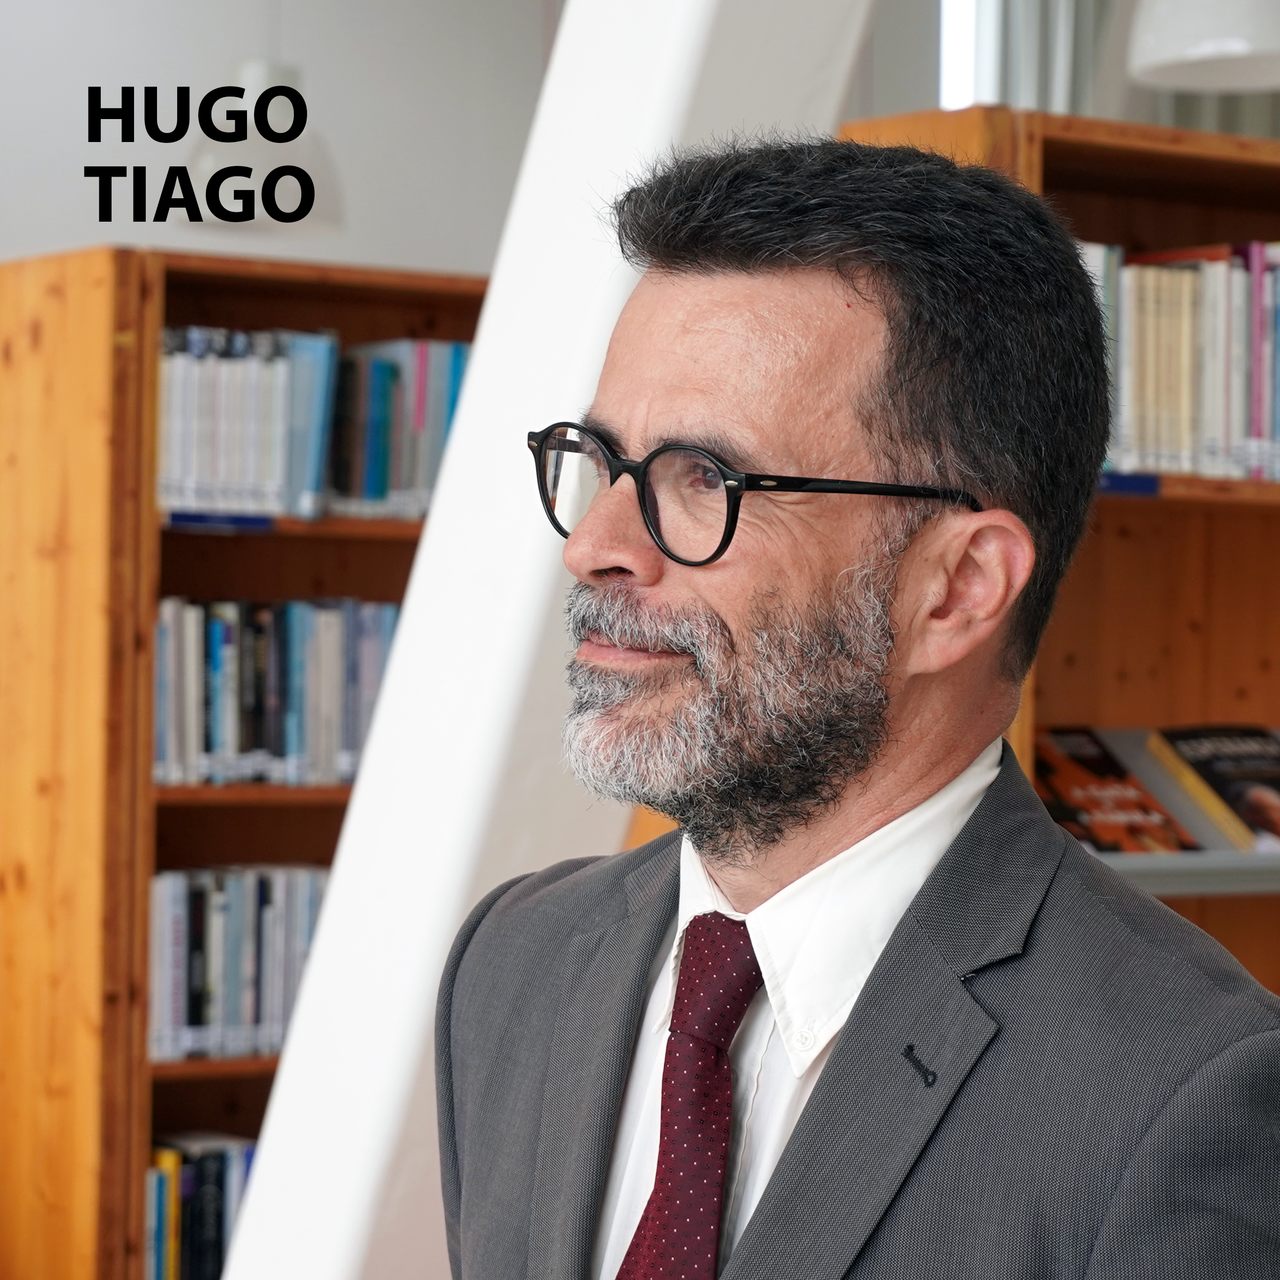 Livro de Cabeceira EP.27 – Hugo Tiago apresenta a obra “A Fábrica do Absoluto”, de Karel Capek